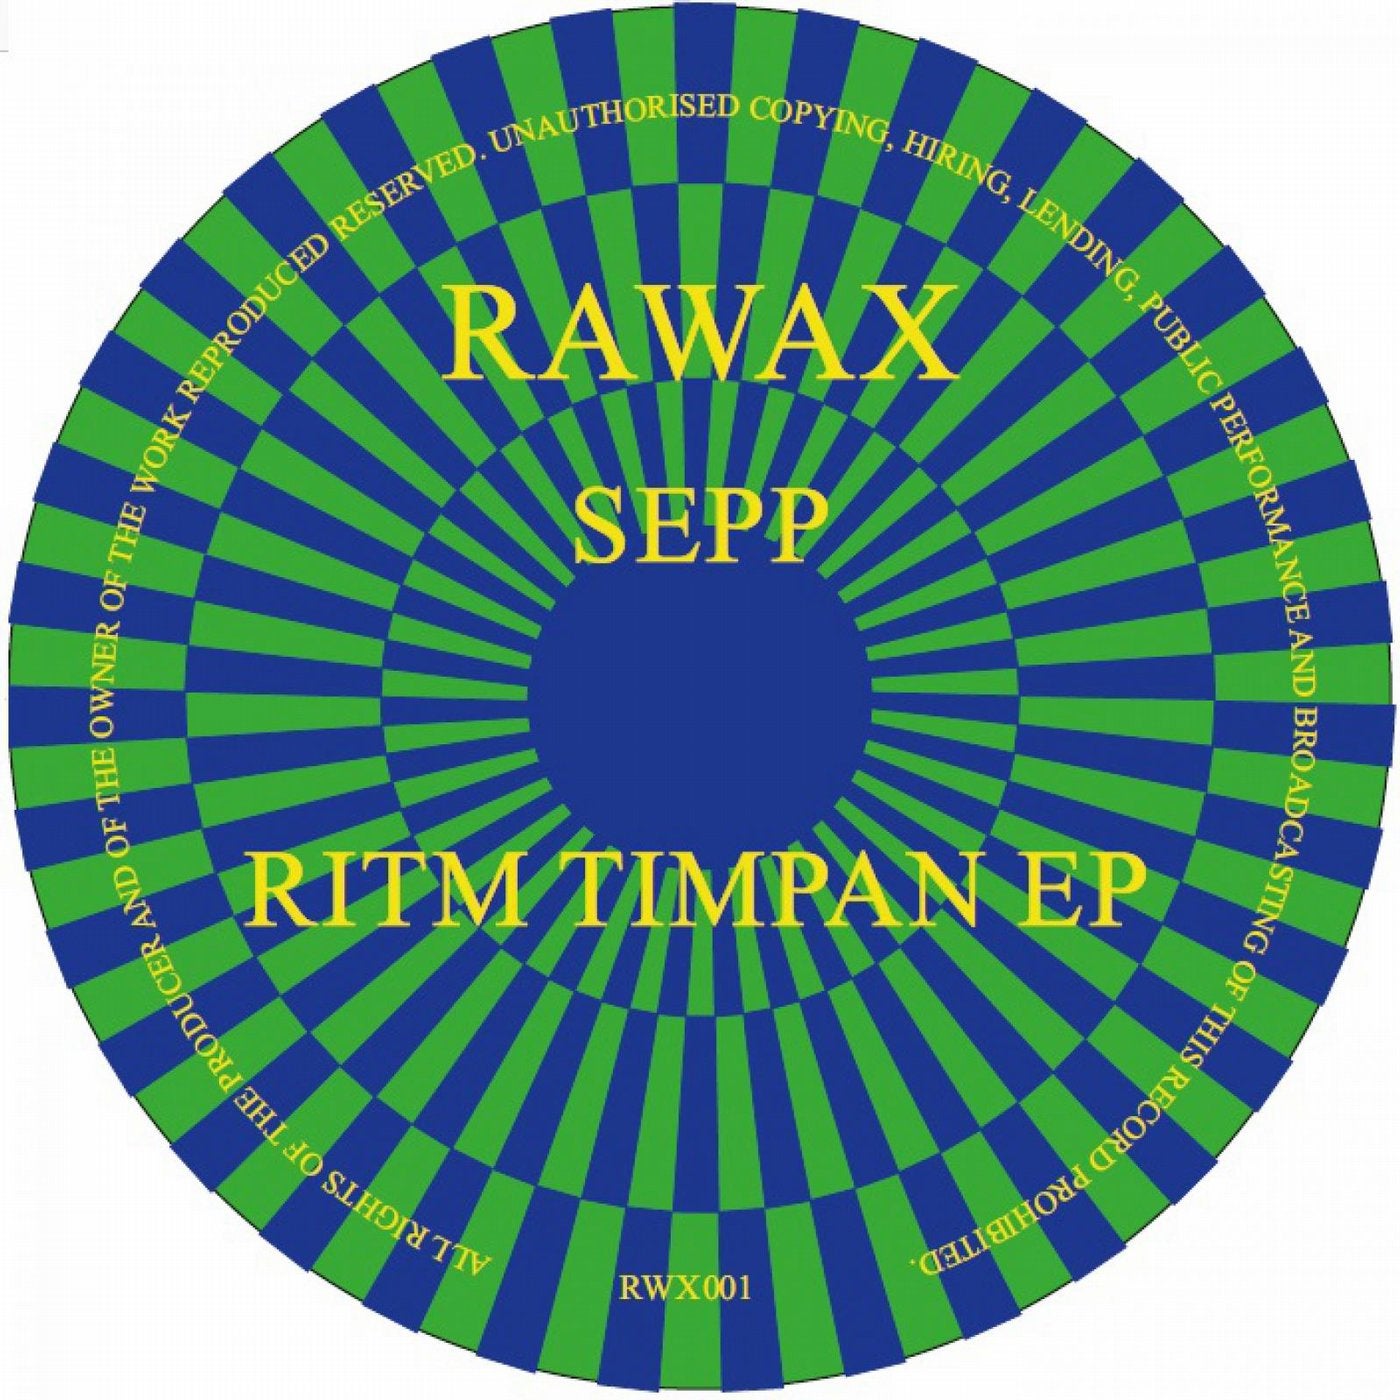 RITM TIMPAN EP